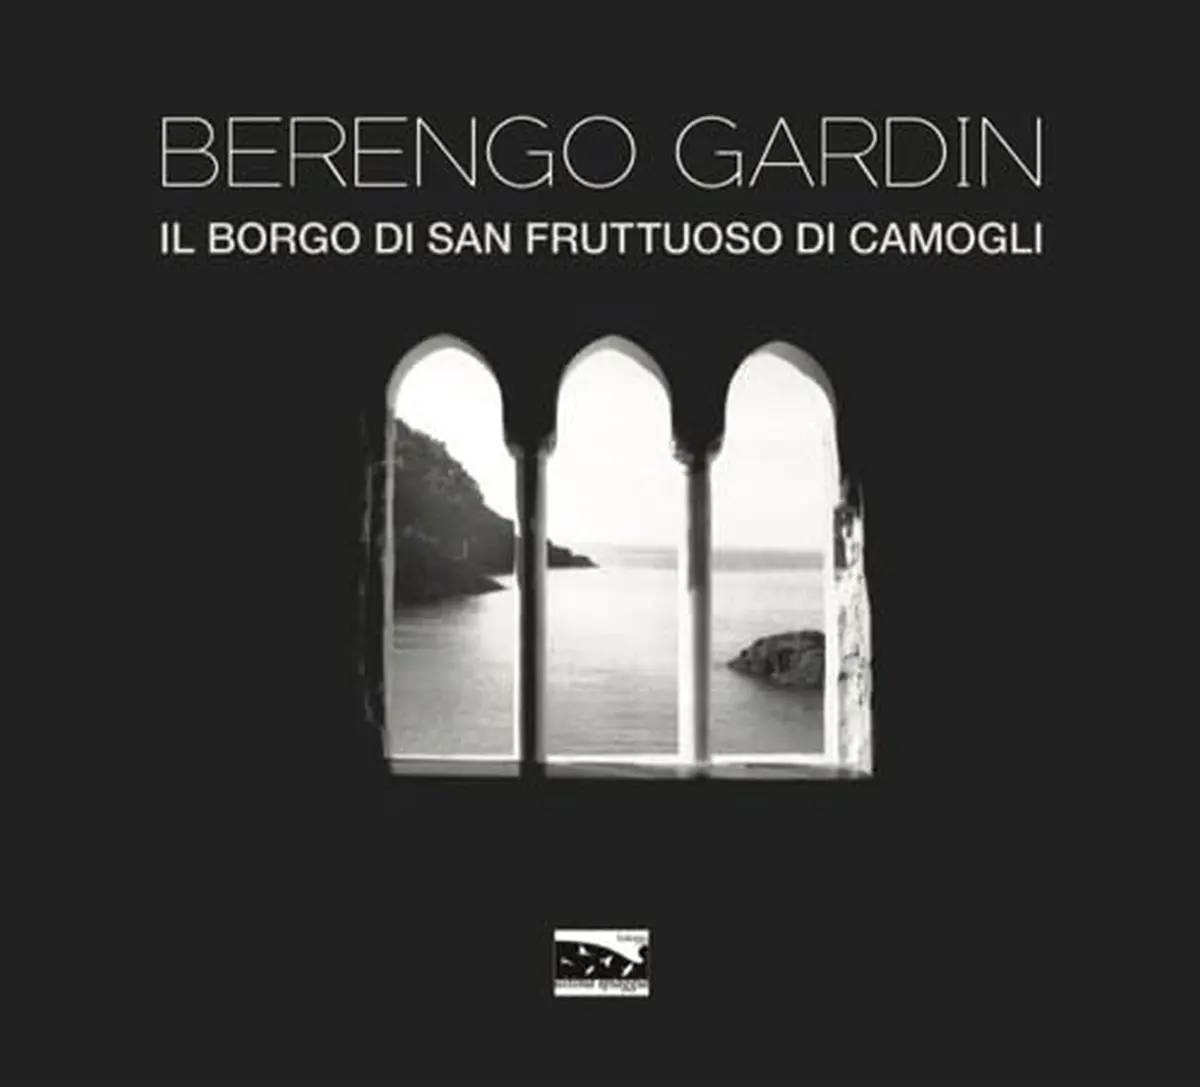 Presentazione libro: "Il borgo di San Fruttuoso di Camogli" di Gianni Berengo Gardin